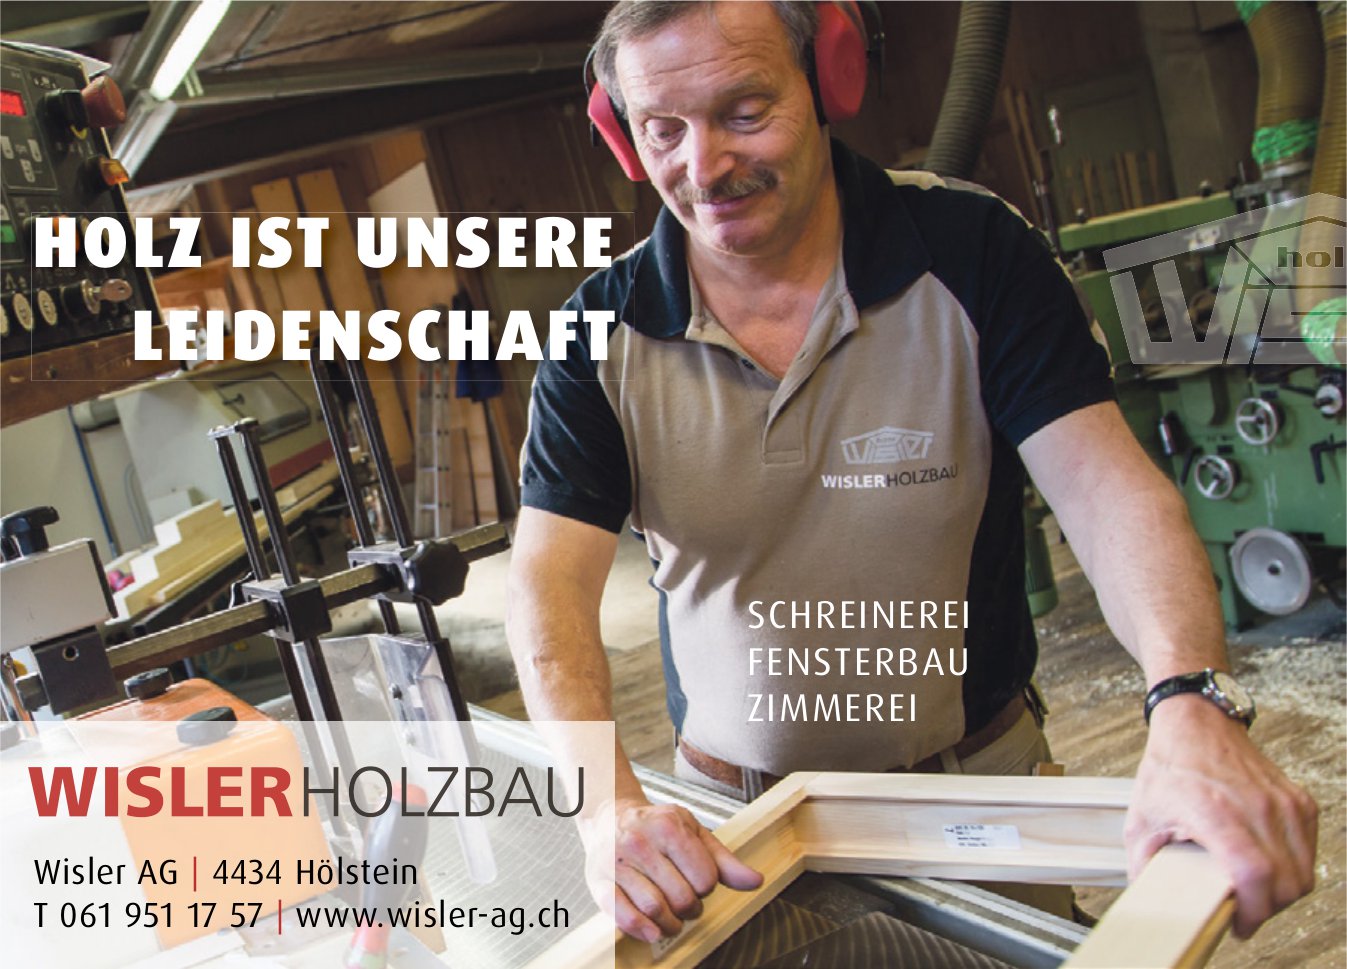 Wisler AG, Hölstein - Holz ist unsere Leidenschaft